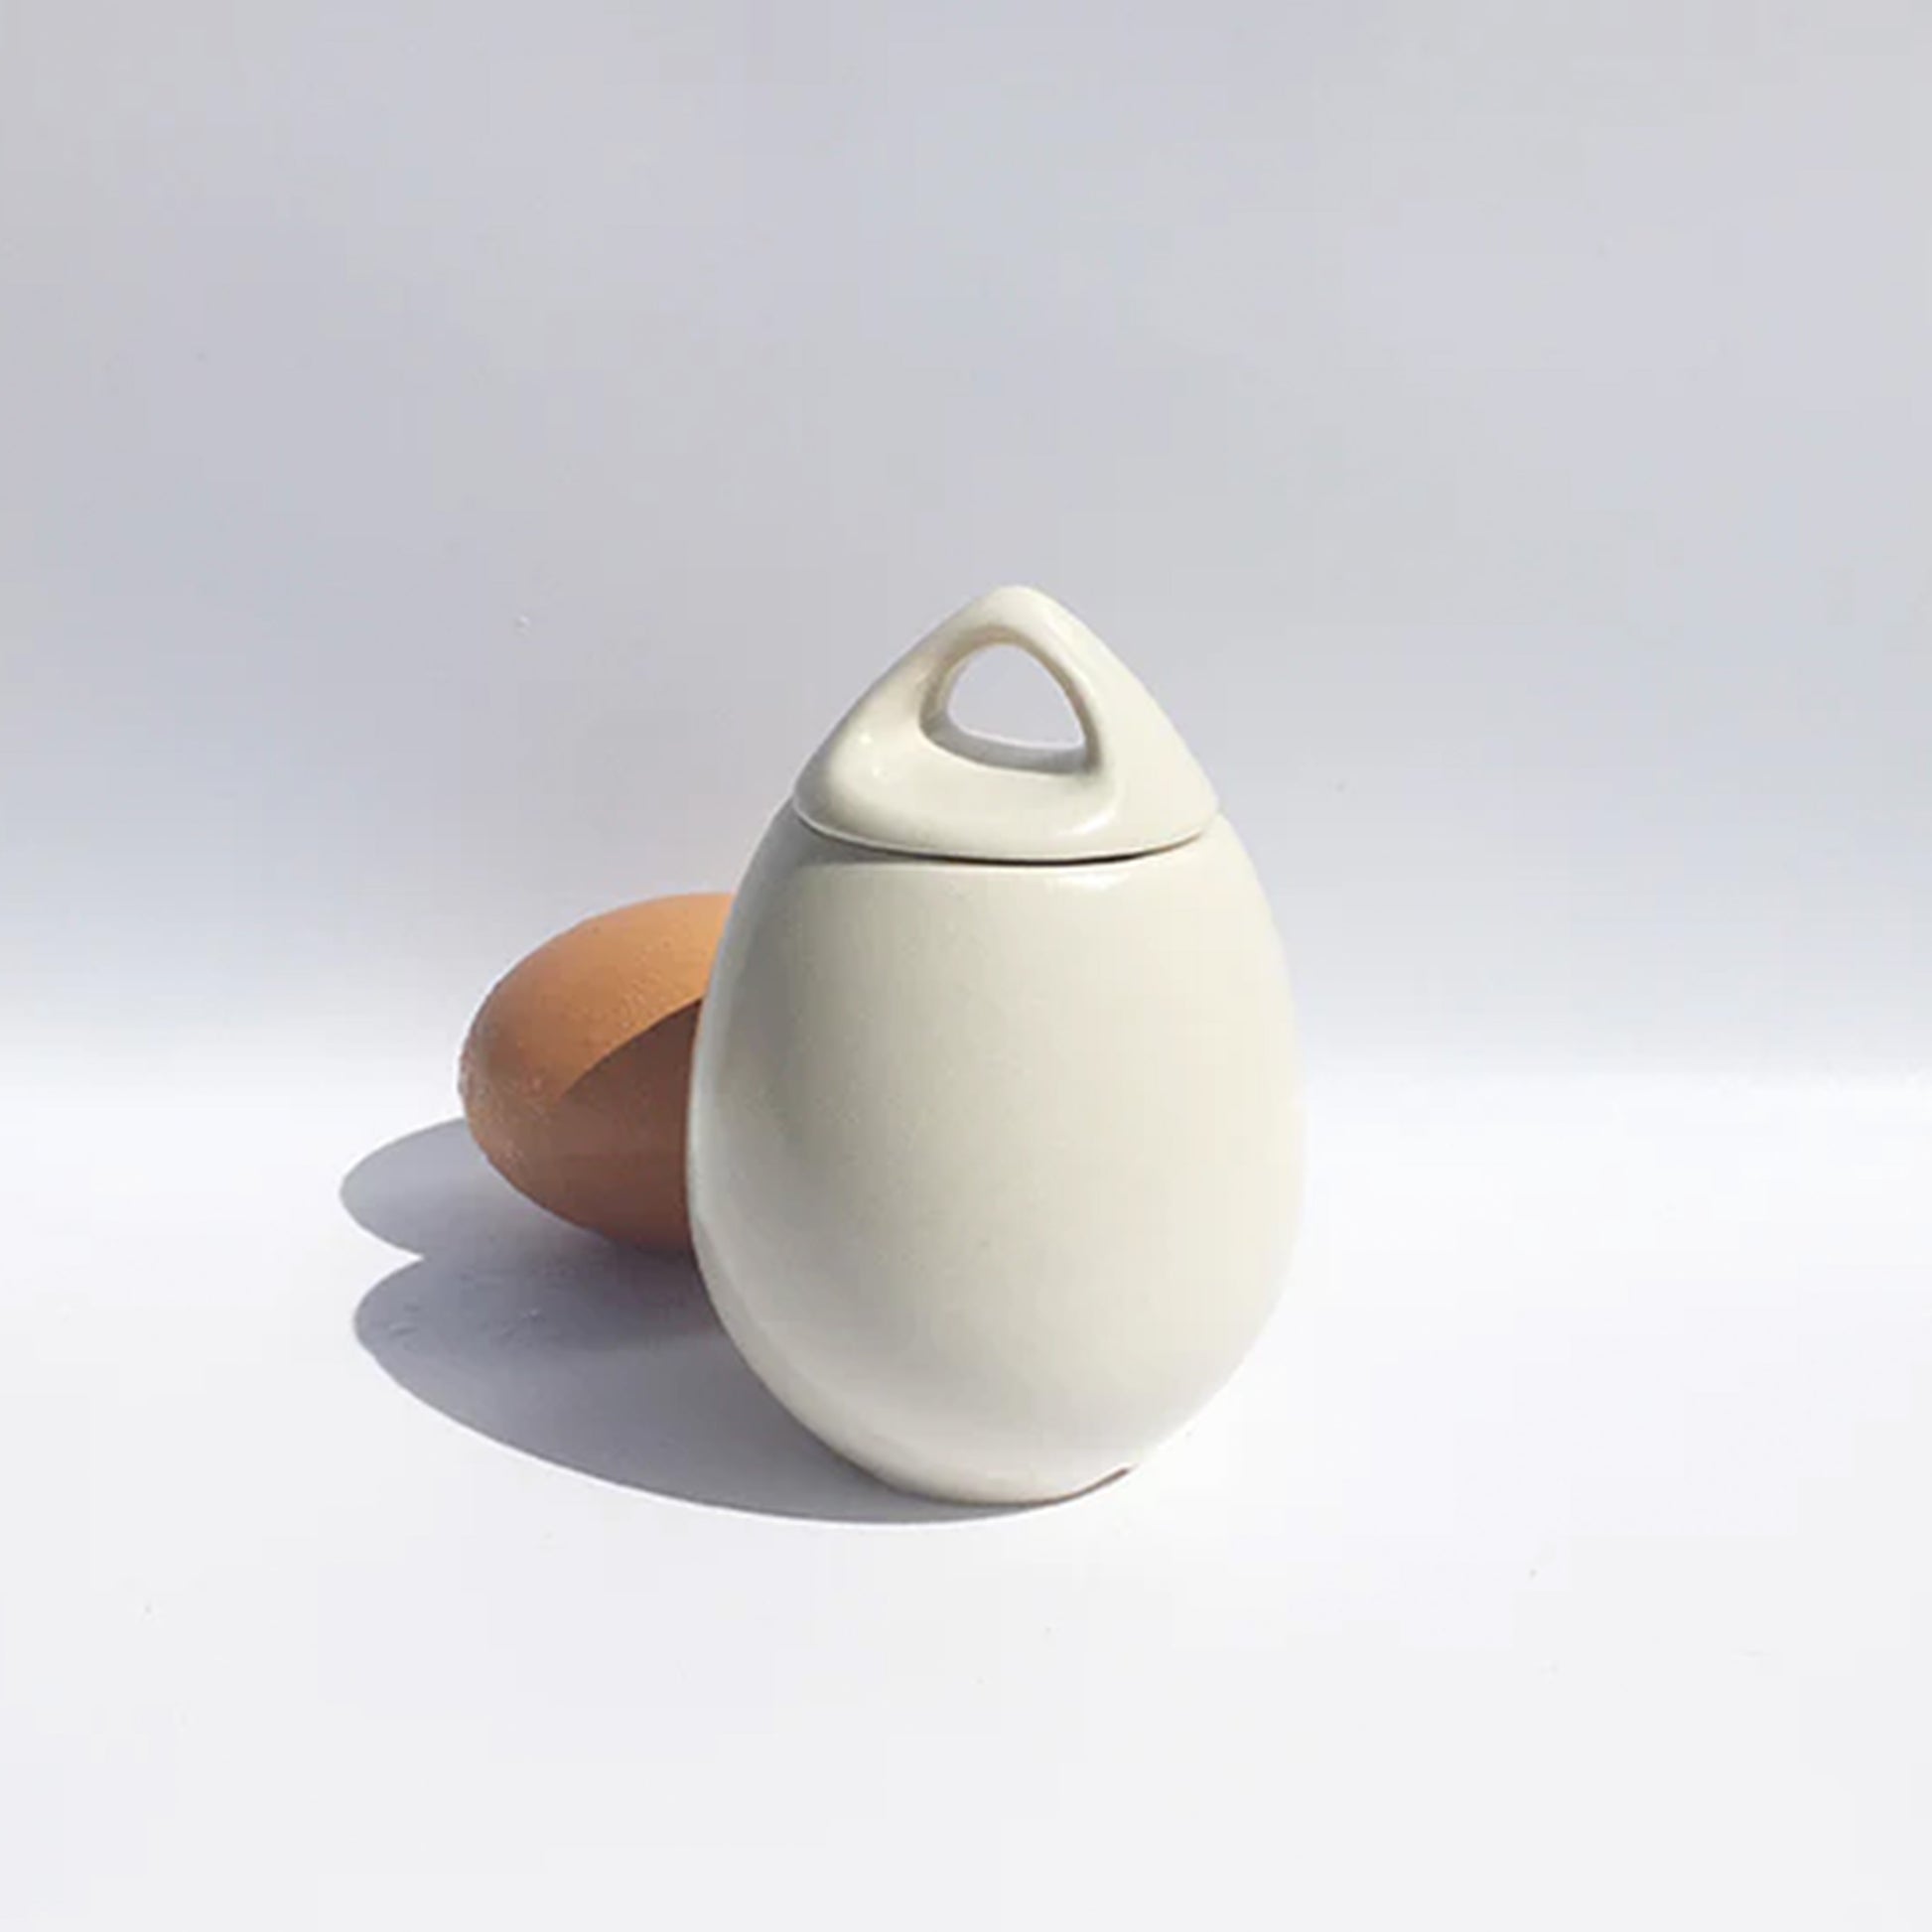 Ceramic Egg Cooker - Shop